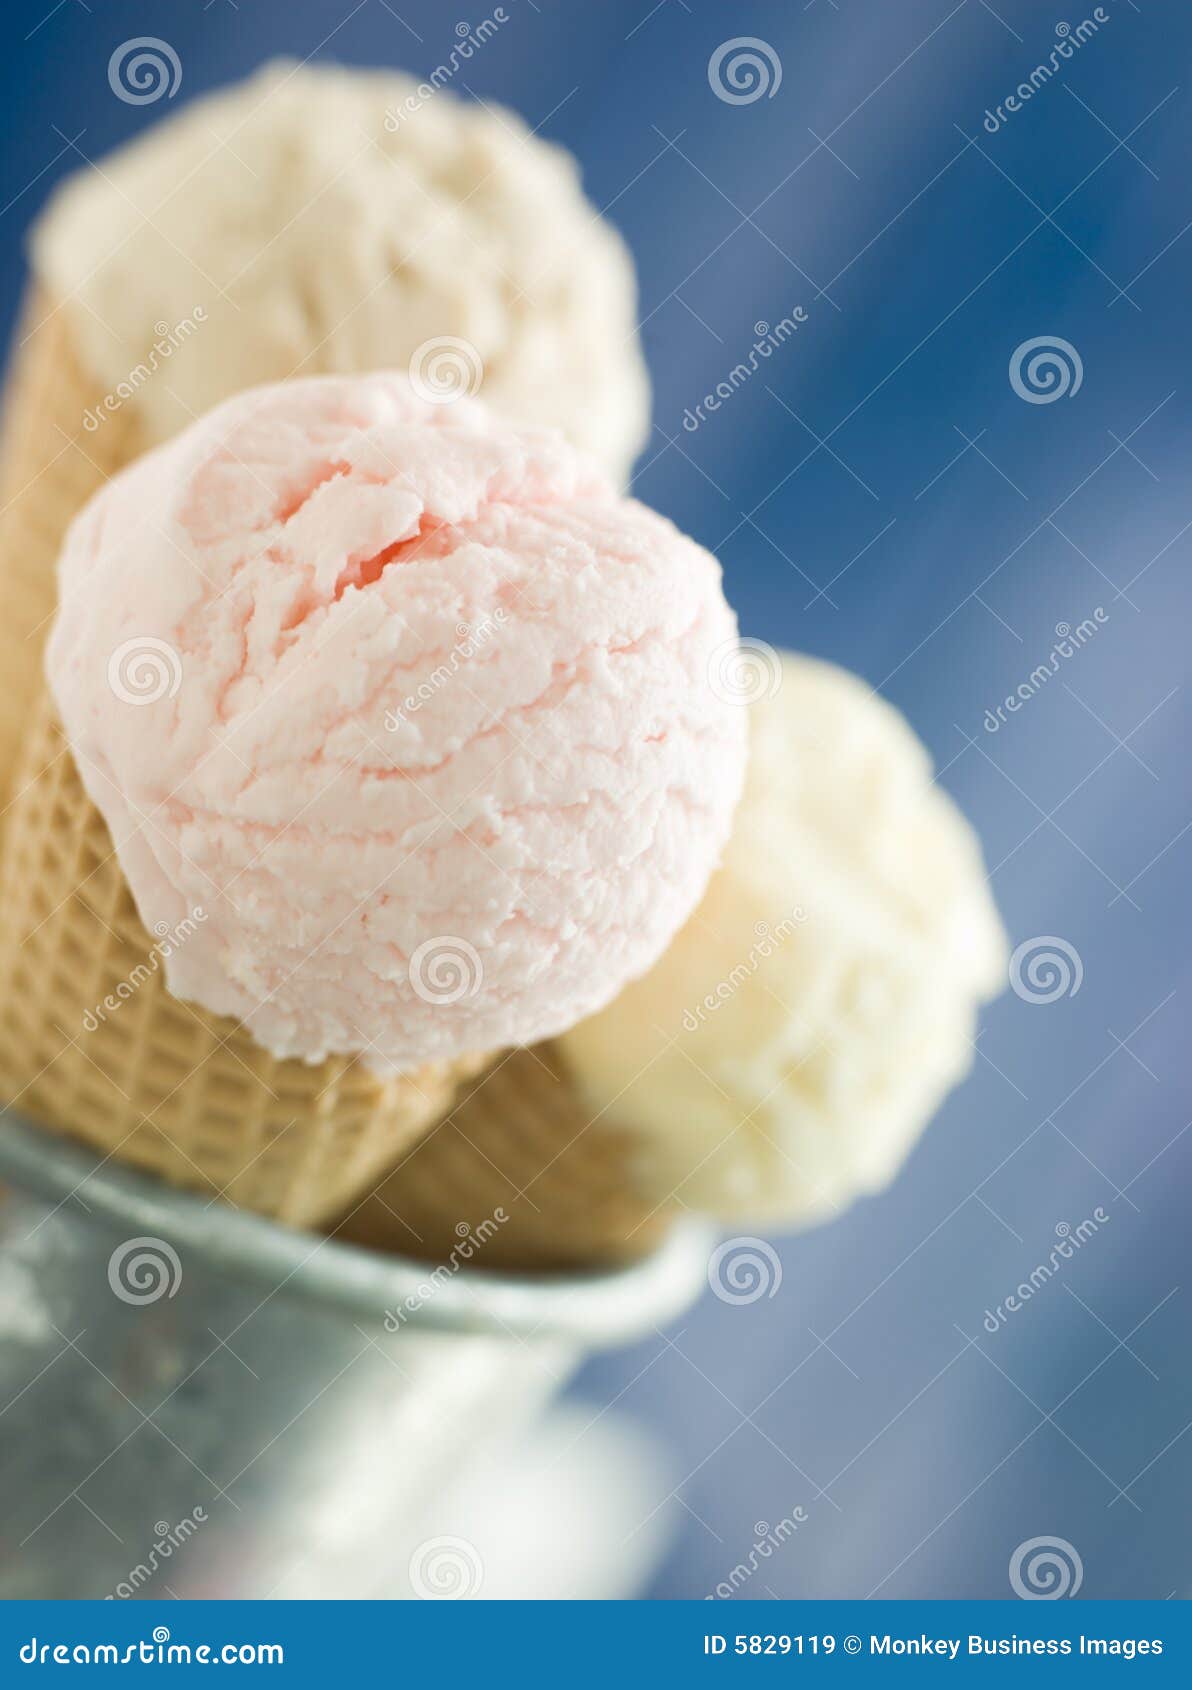 trio of ice creams in wafer cones